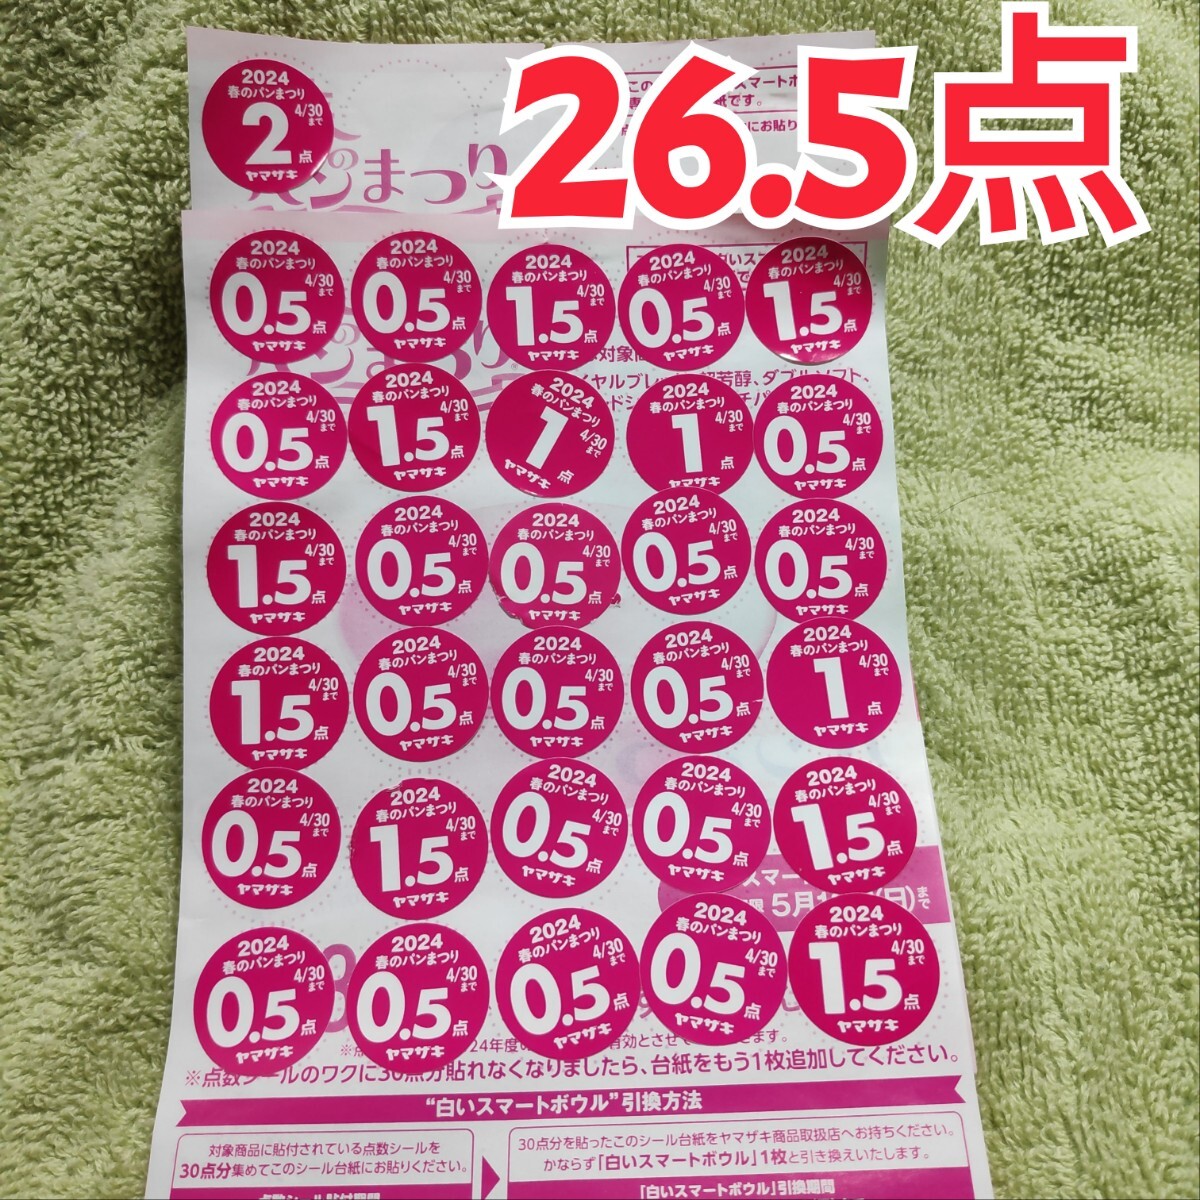 ヤマザキ春のパン祭り 26.5点 応募シール ミニレター63円で発送の画像1